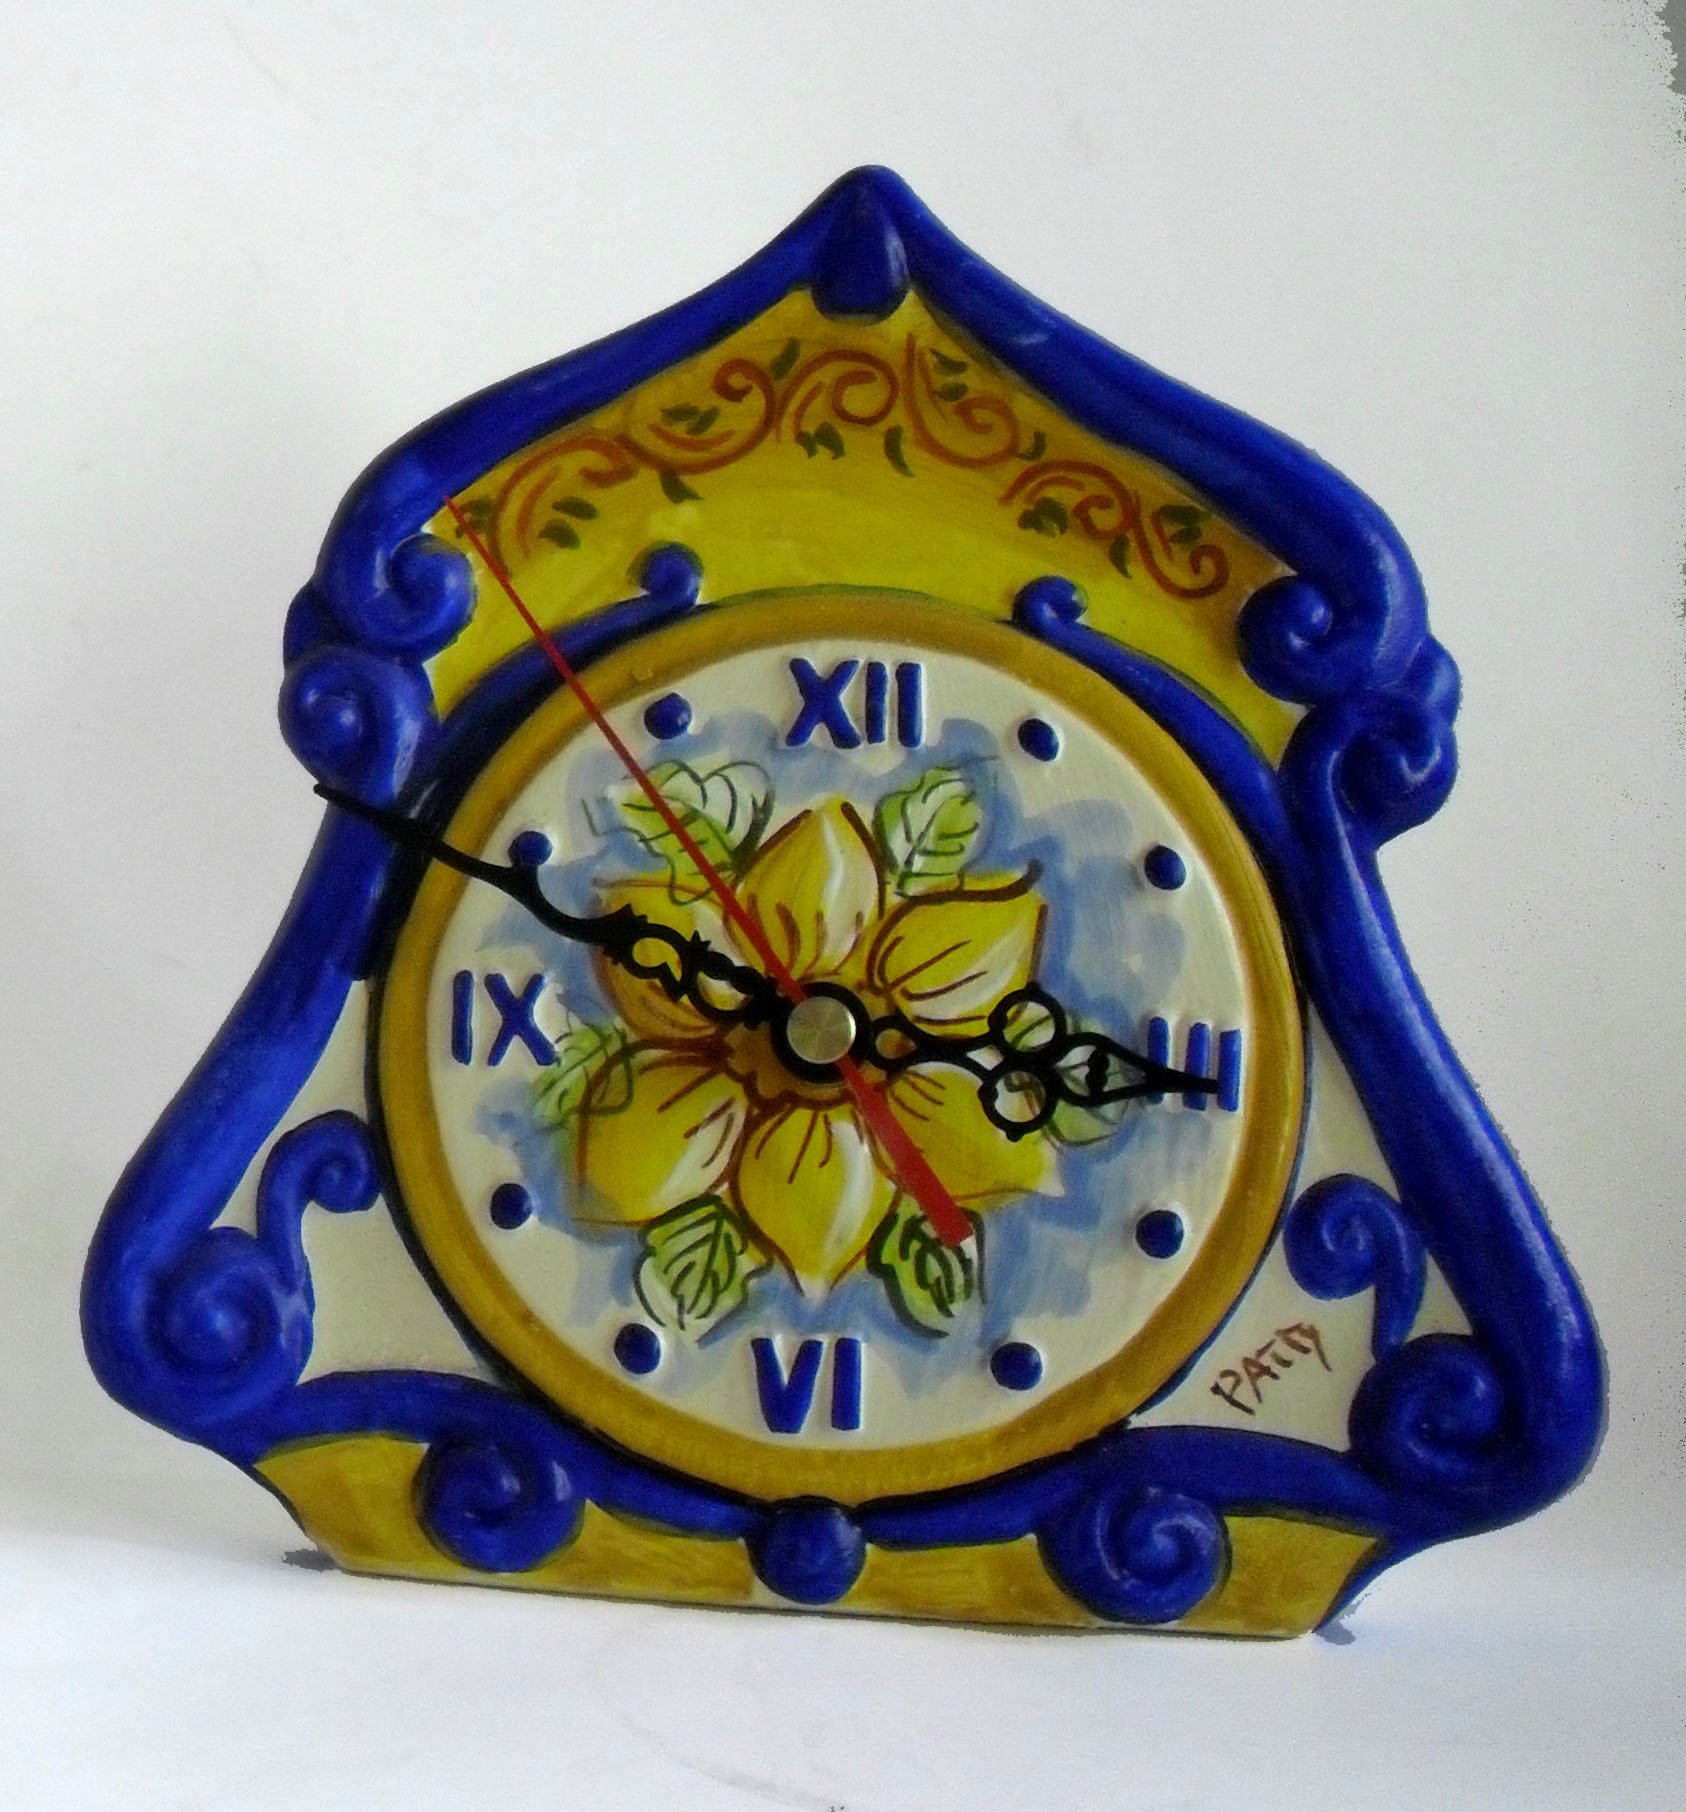 Orologio da tavolo a cappa, colori blu e giallo, con disegnato un fiore